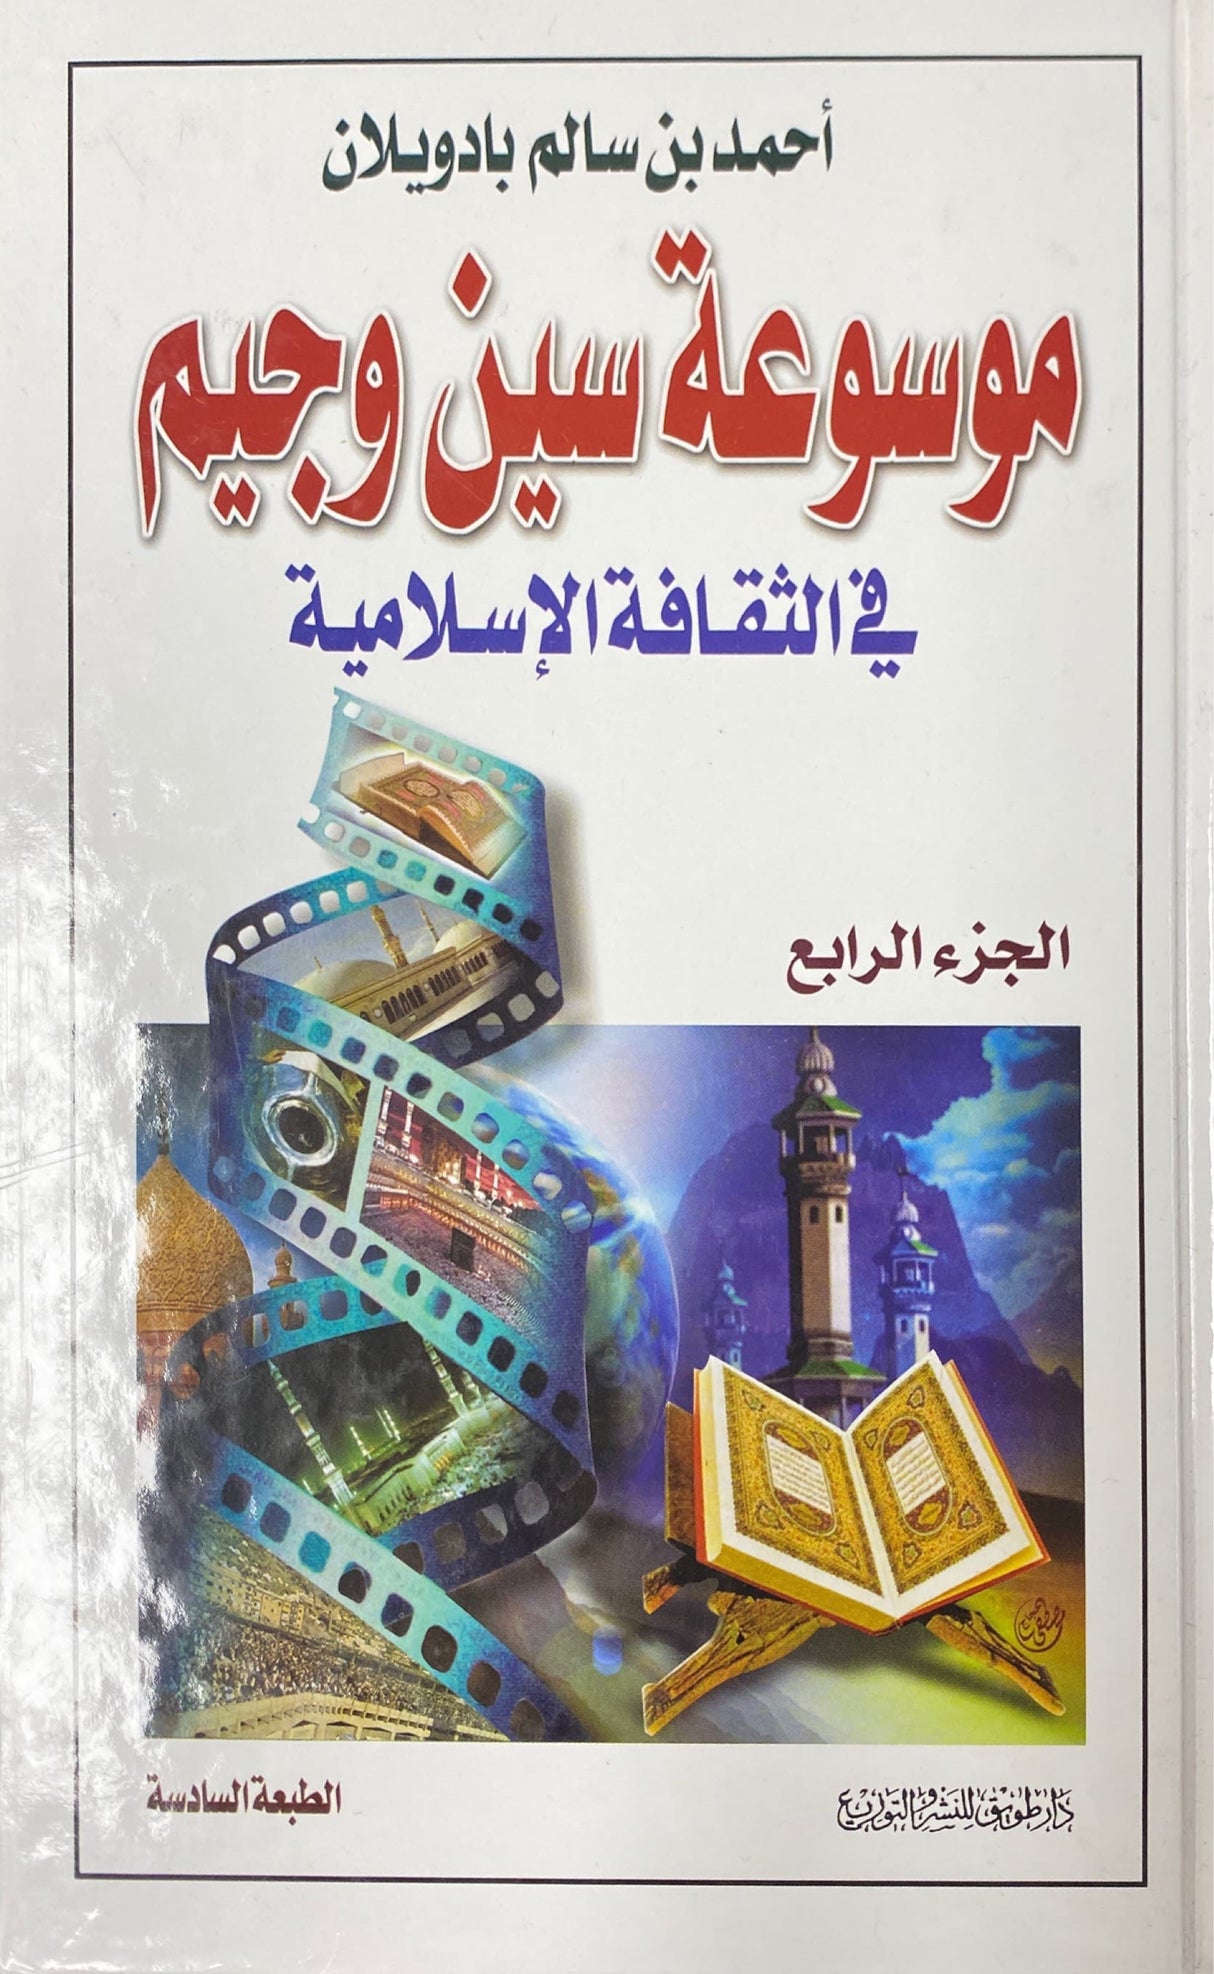 موسوعة سين و جيم في الثقافة الاسلاميية    Mawsuatu Sin Wa Jim Fith Thaqafat Al Islamiyah (4 Volume Set)